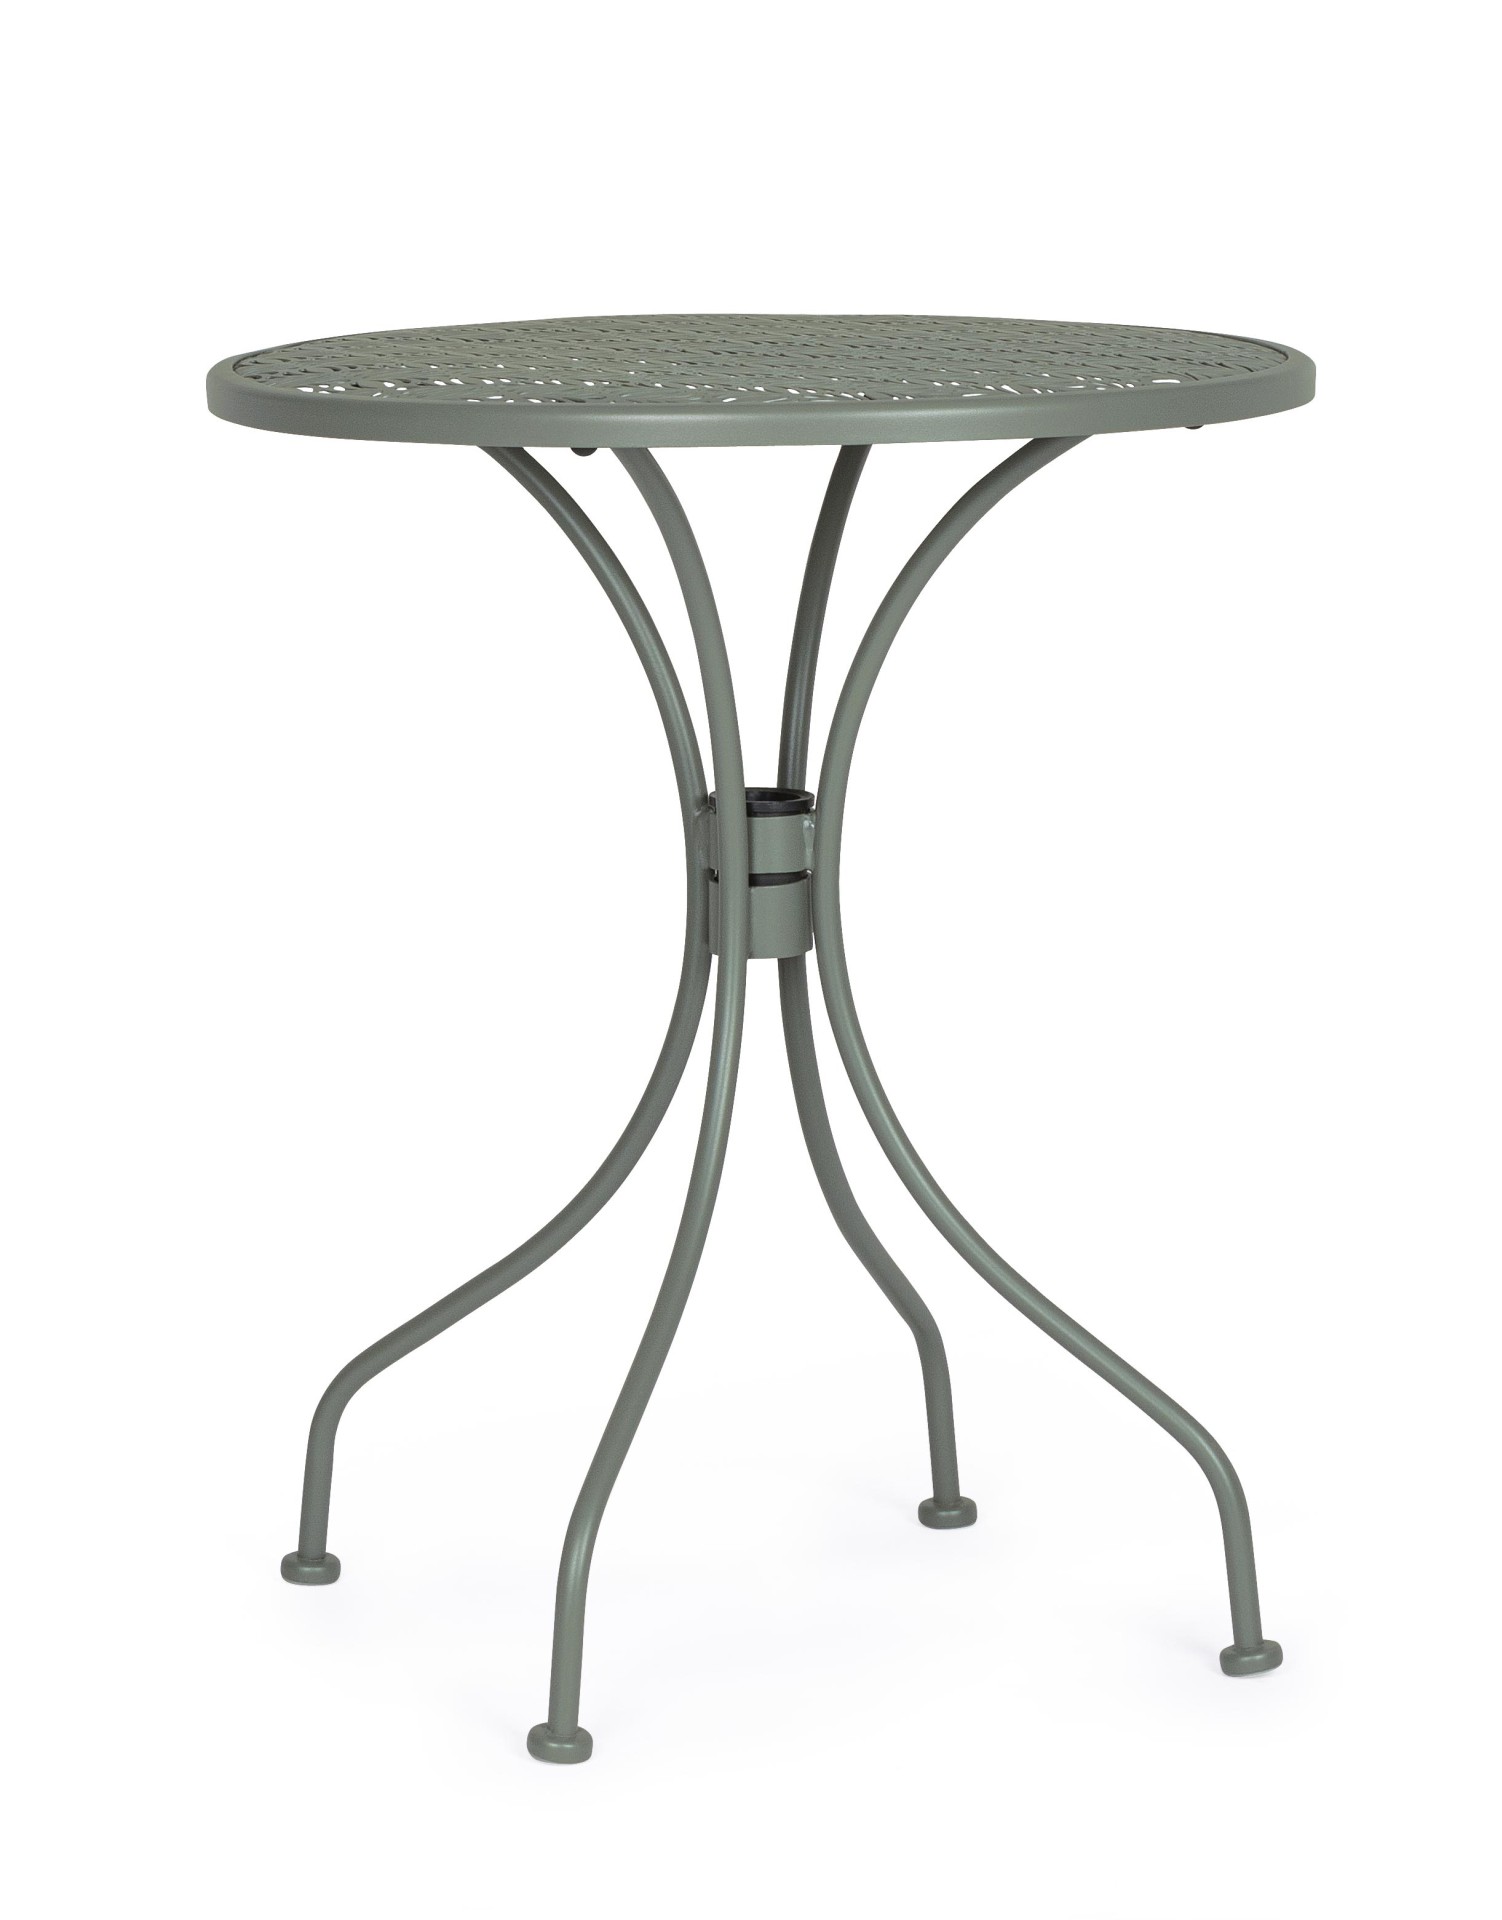 Der Gartentisch Lizette überzeugt mit seinem klassischen Design. Gefertigt wurde er aus Aluminium, welches einen grünen Farbton besitzt. Das Gestell ist aus auch Aluminium und hat eine grüne Farbe. Der Tisch verfügt über einen Durchmesser von 60 cm und is